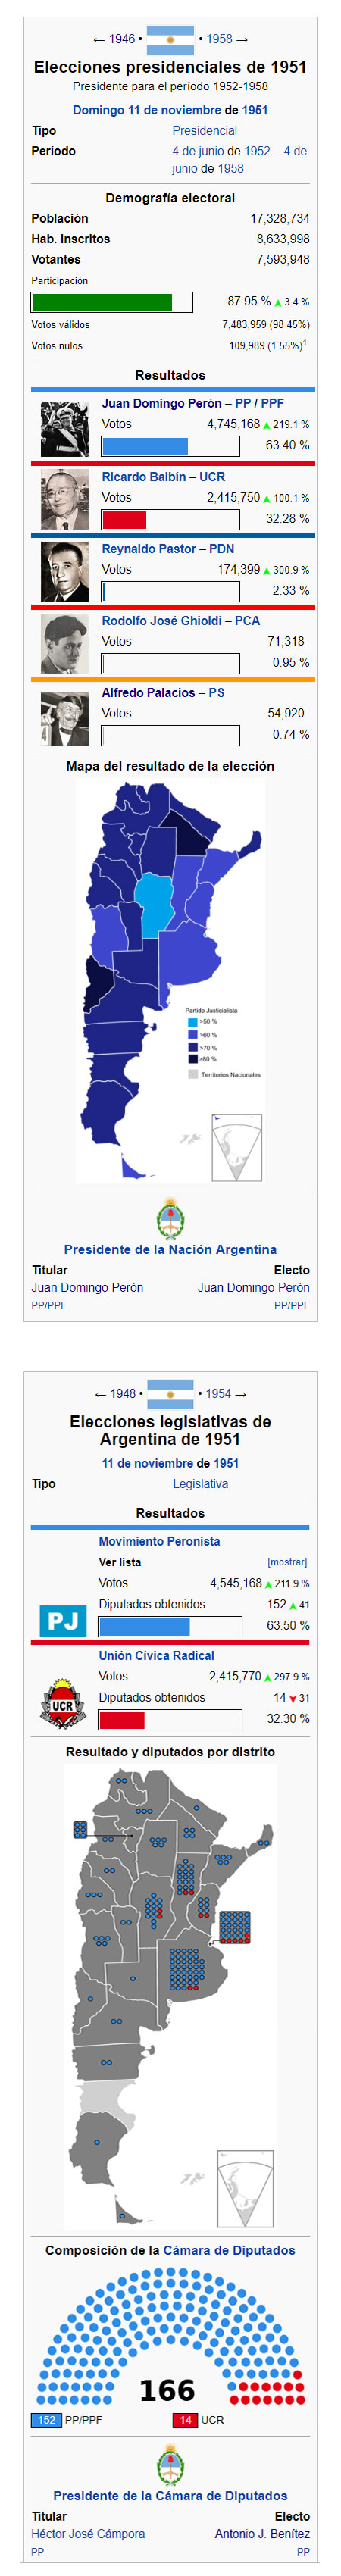 datos elecciones de 1951